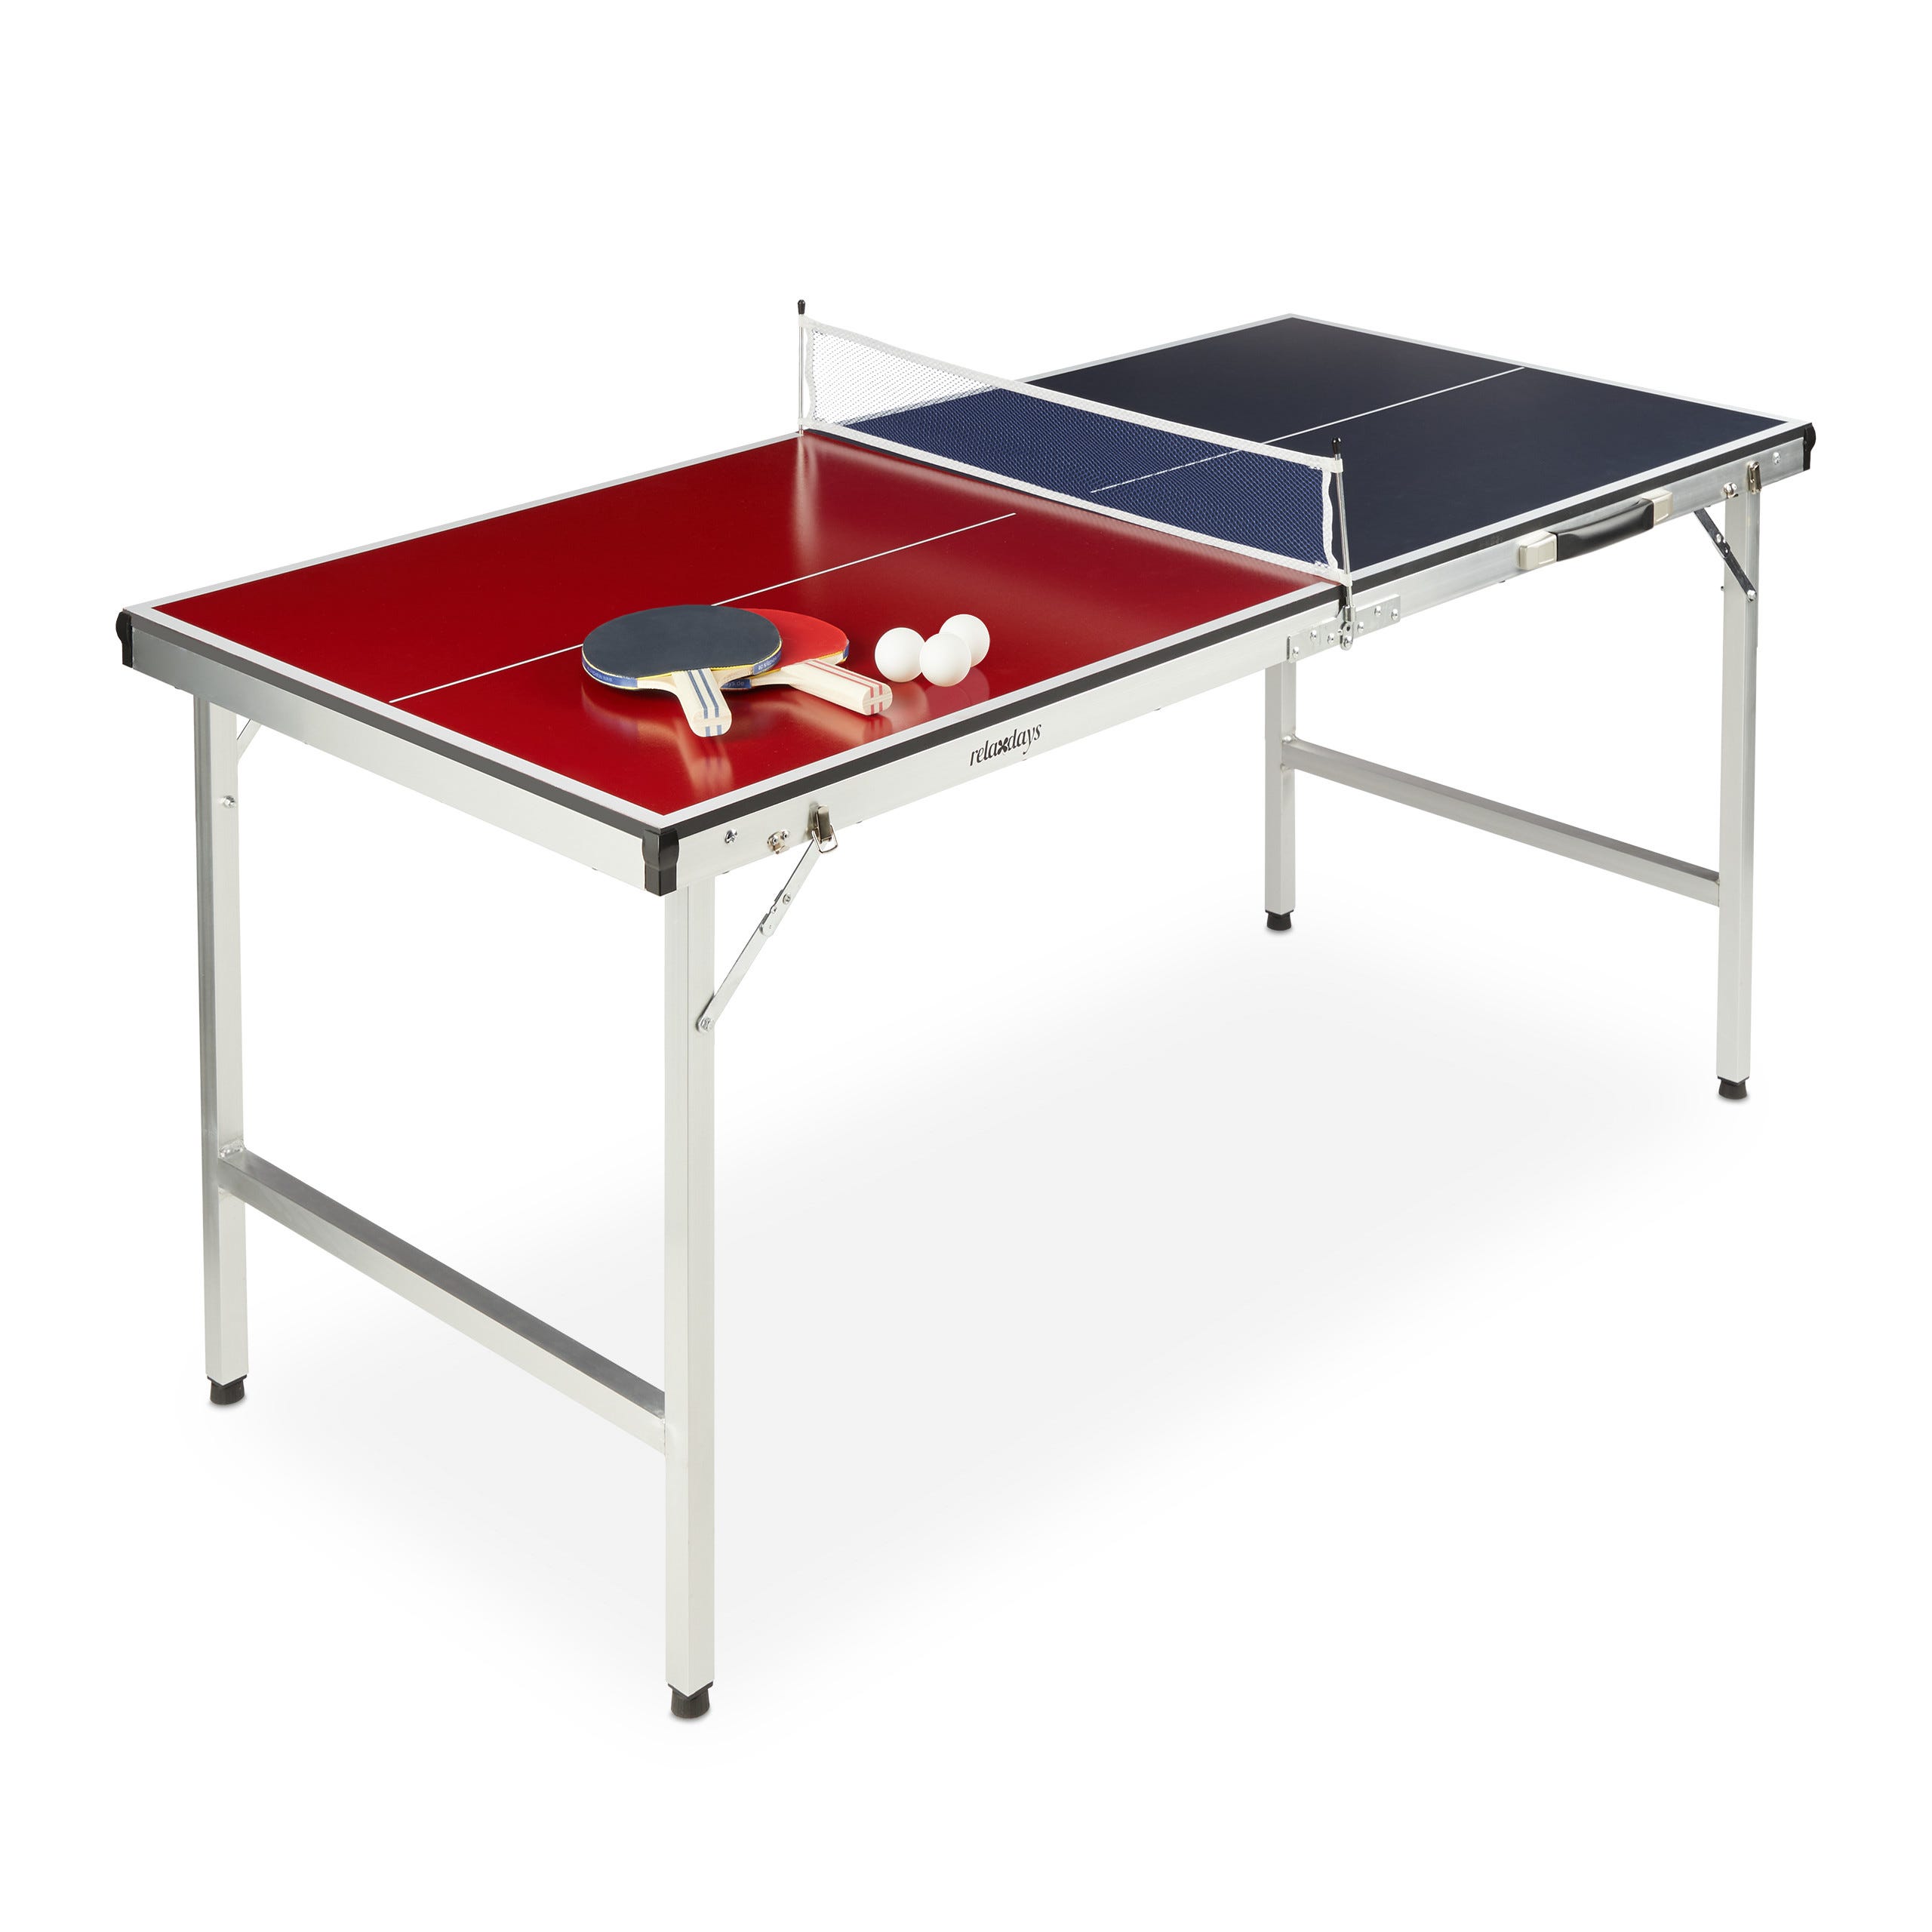 Table de ping-pong pliable à roulettes avec raquettes, balles et filet  FREDIE - L274.3 x P152.4 x H76.2 cm